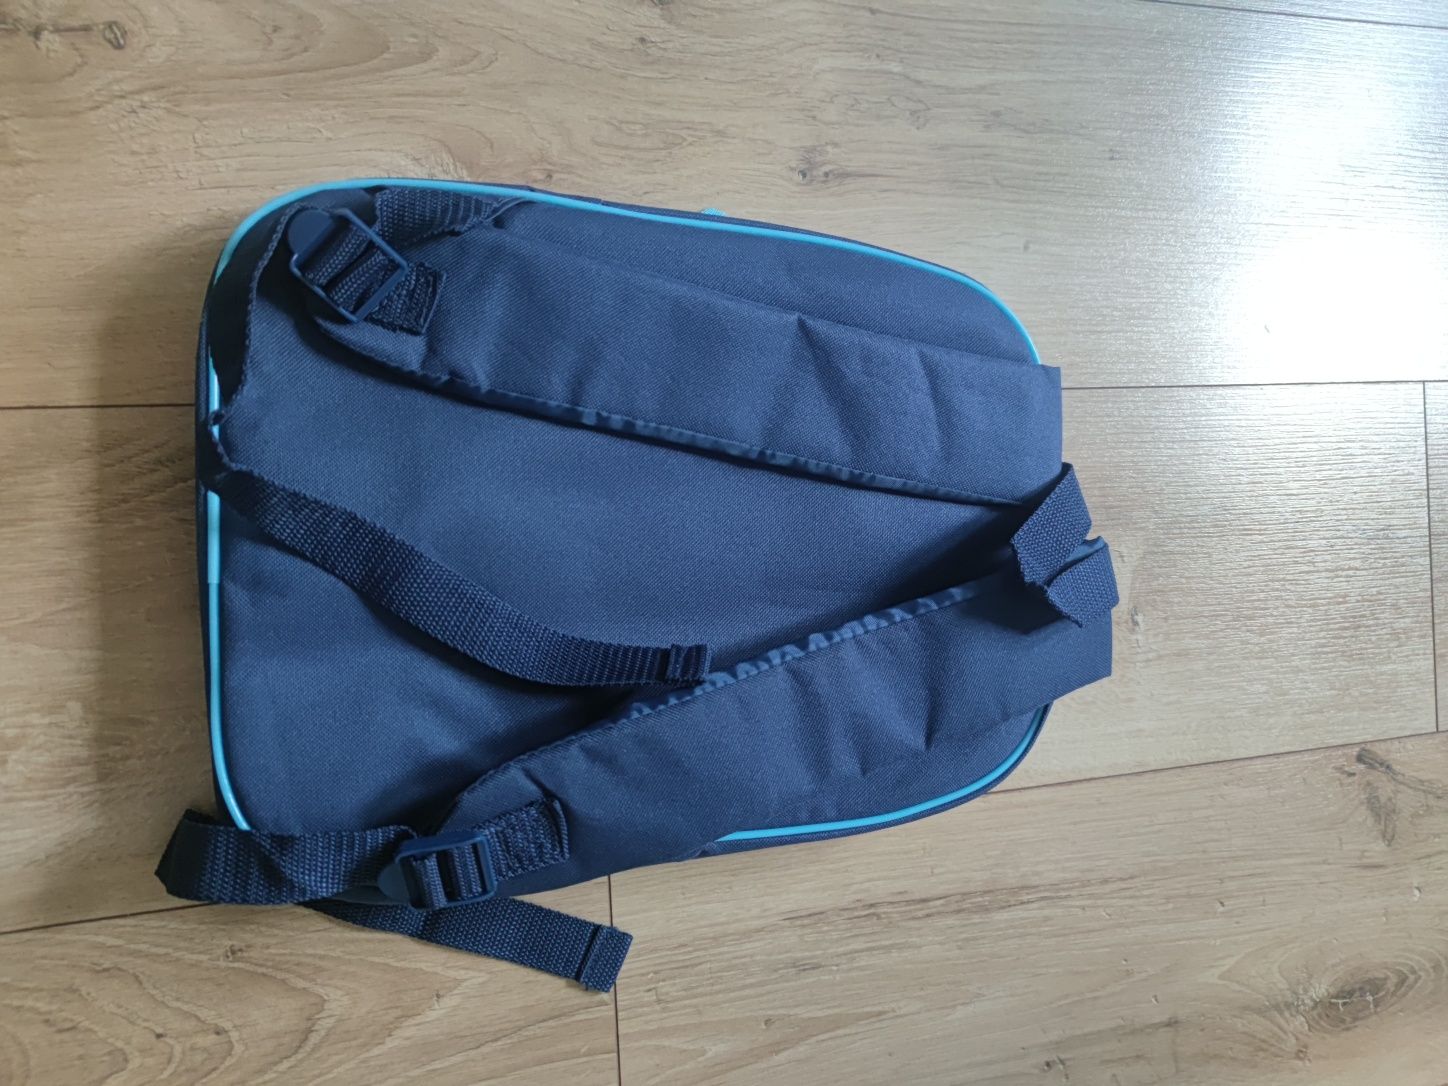 Nowy szkolny plecak Paul Frank blogerski niemiecki